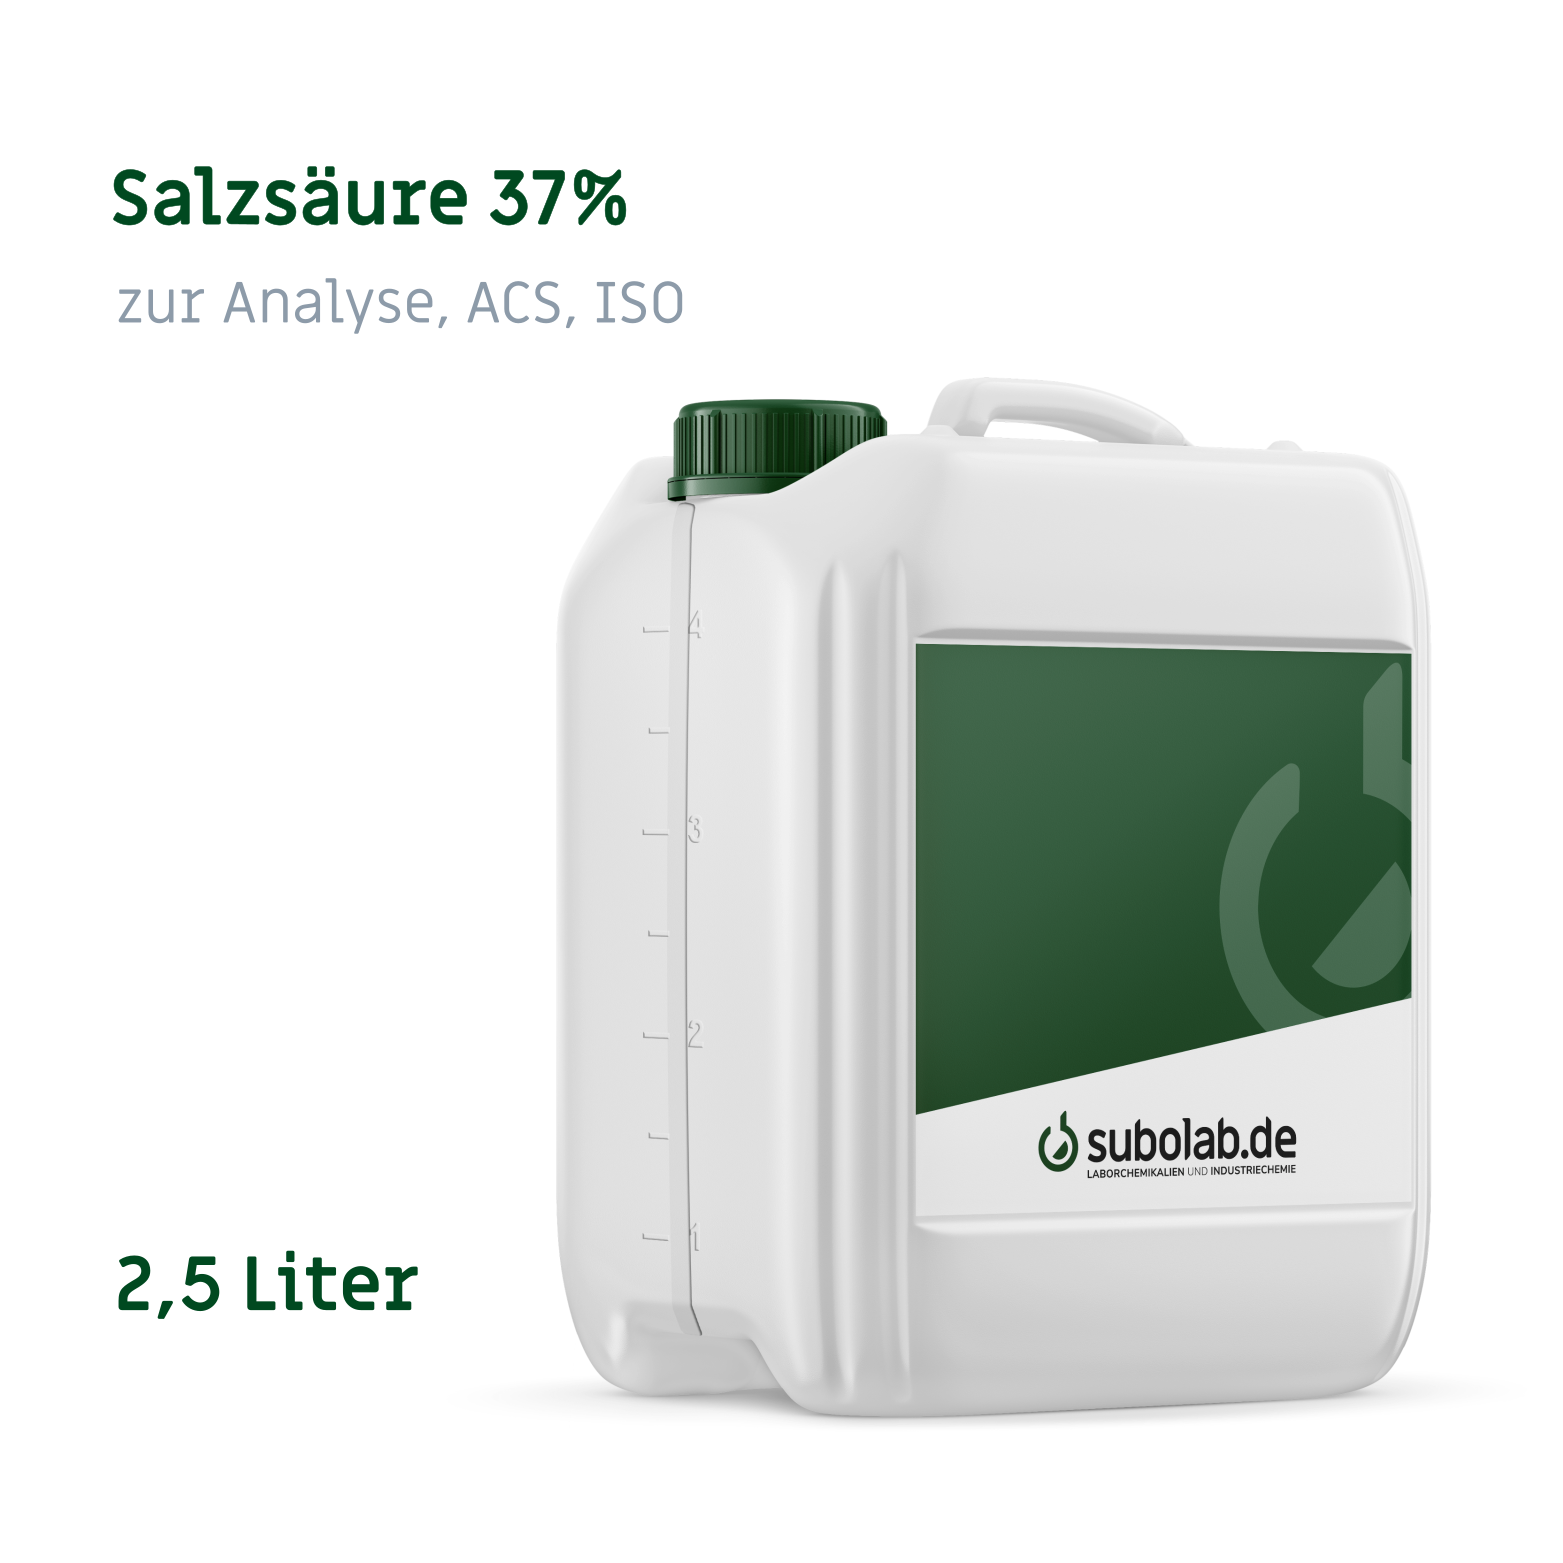 Bild von Salzsäure 37% zur Analyse, ACS, ISO (2,5 Liter)